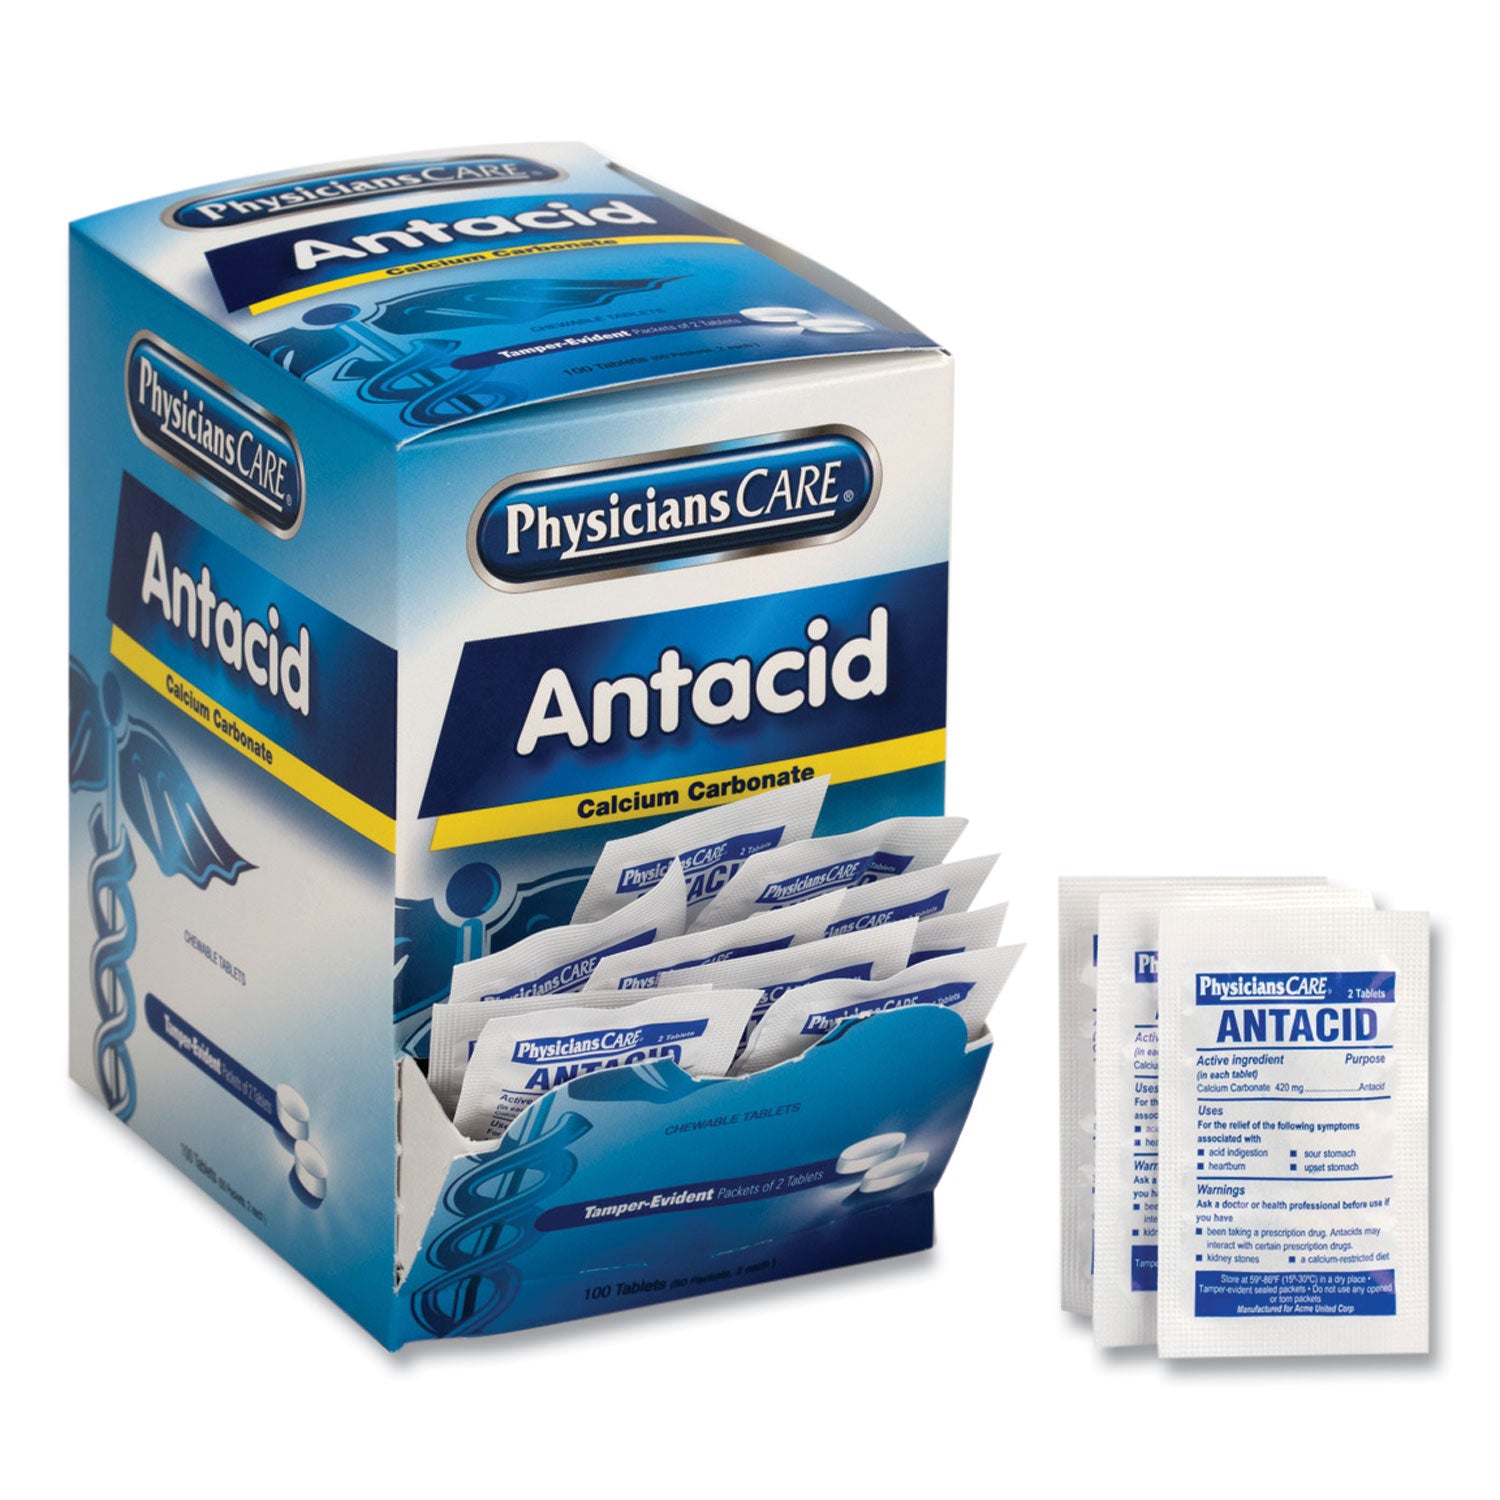 antacid-calcium-carbonate-medication-two-pack-50-packs-box_acm90089 - 2